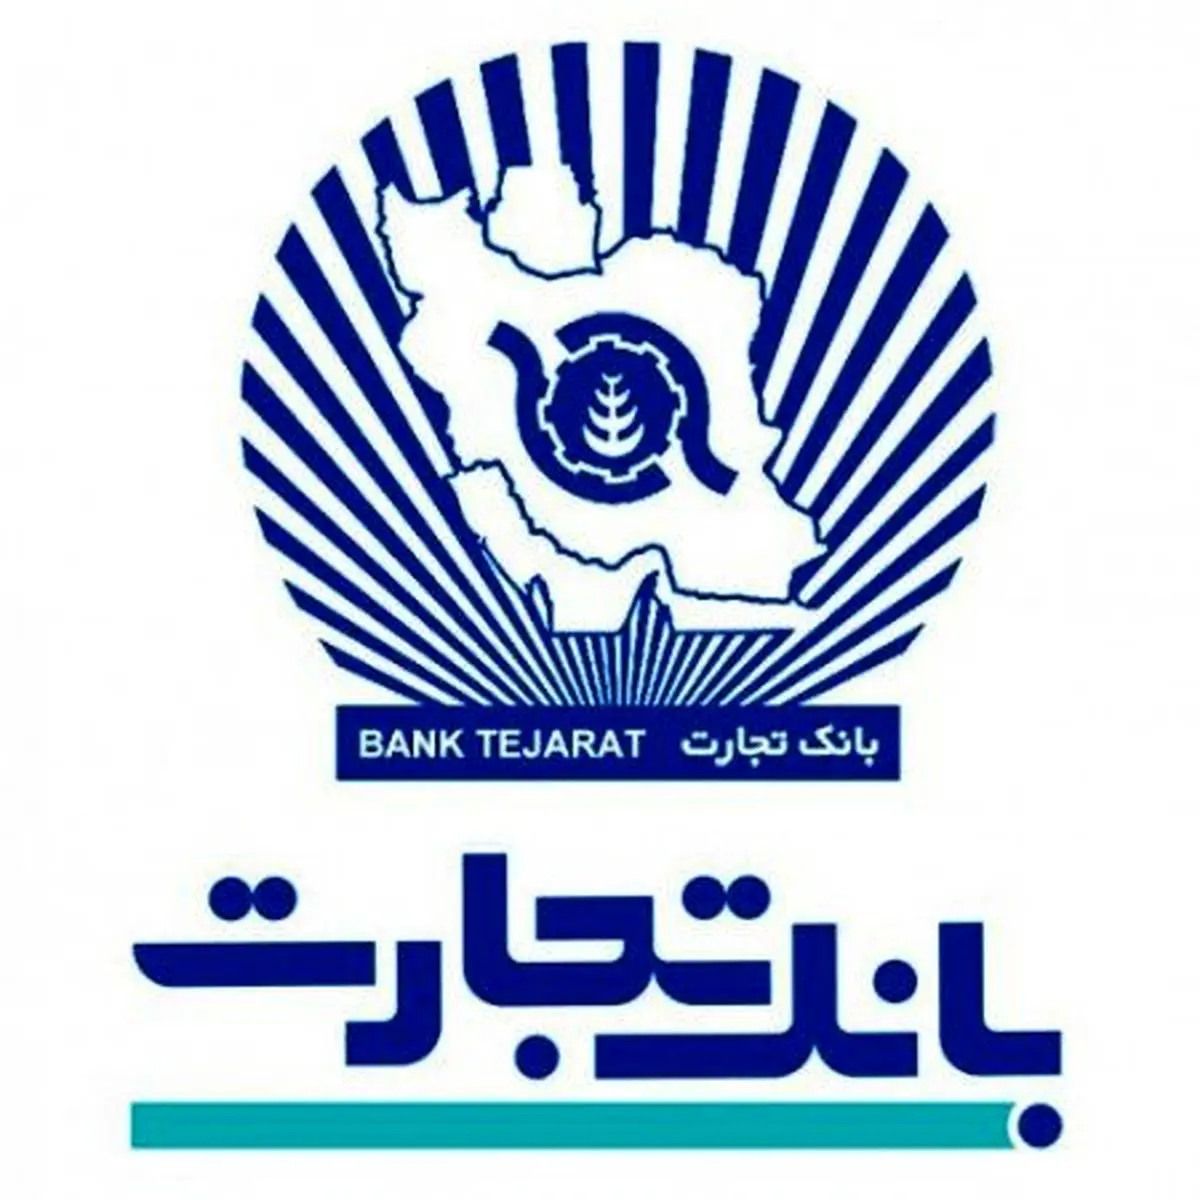 گام بلند بانک تجارت از حمایت از کالای ایرانی تا رونق تولید ملی/جای گیری مناسب بانک تجارت در پازل رونق تولید ملی